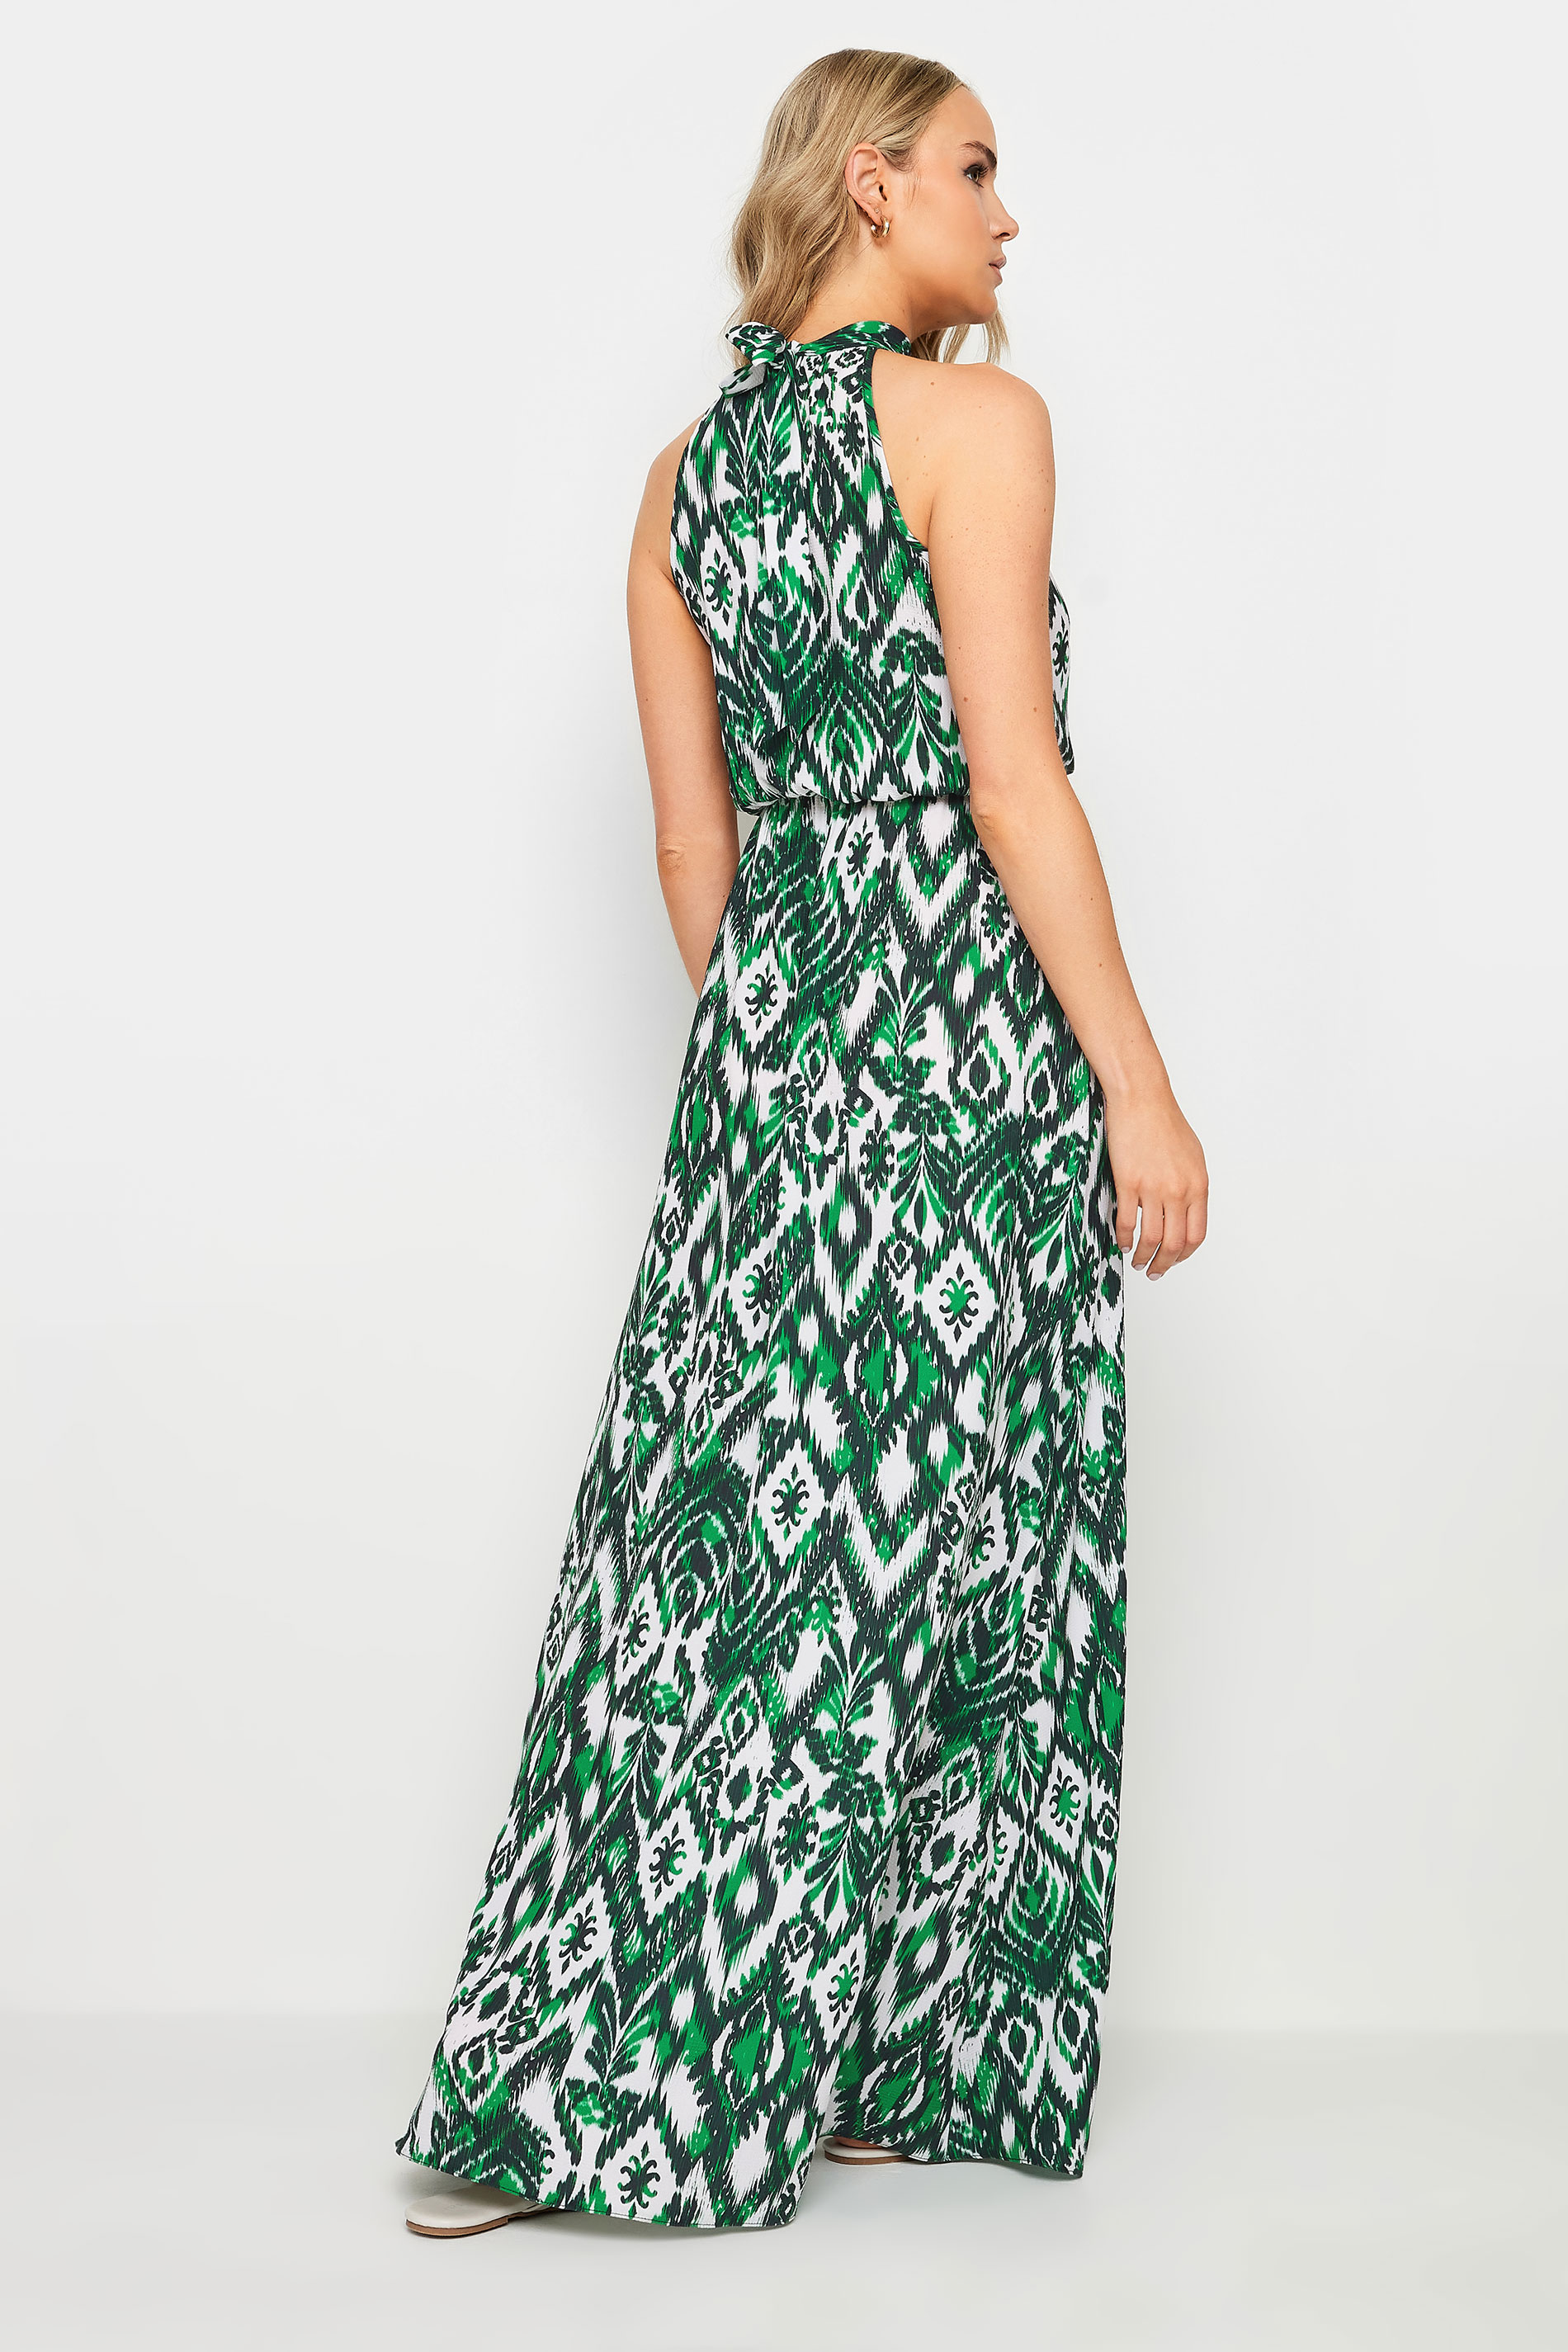 LTS Tall Women's Green Aztec Print Halter Neck Dress | Long Tall Sally 3